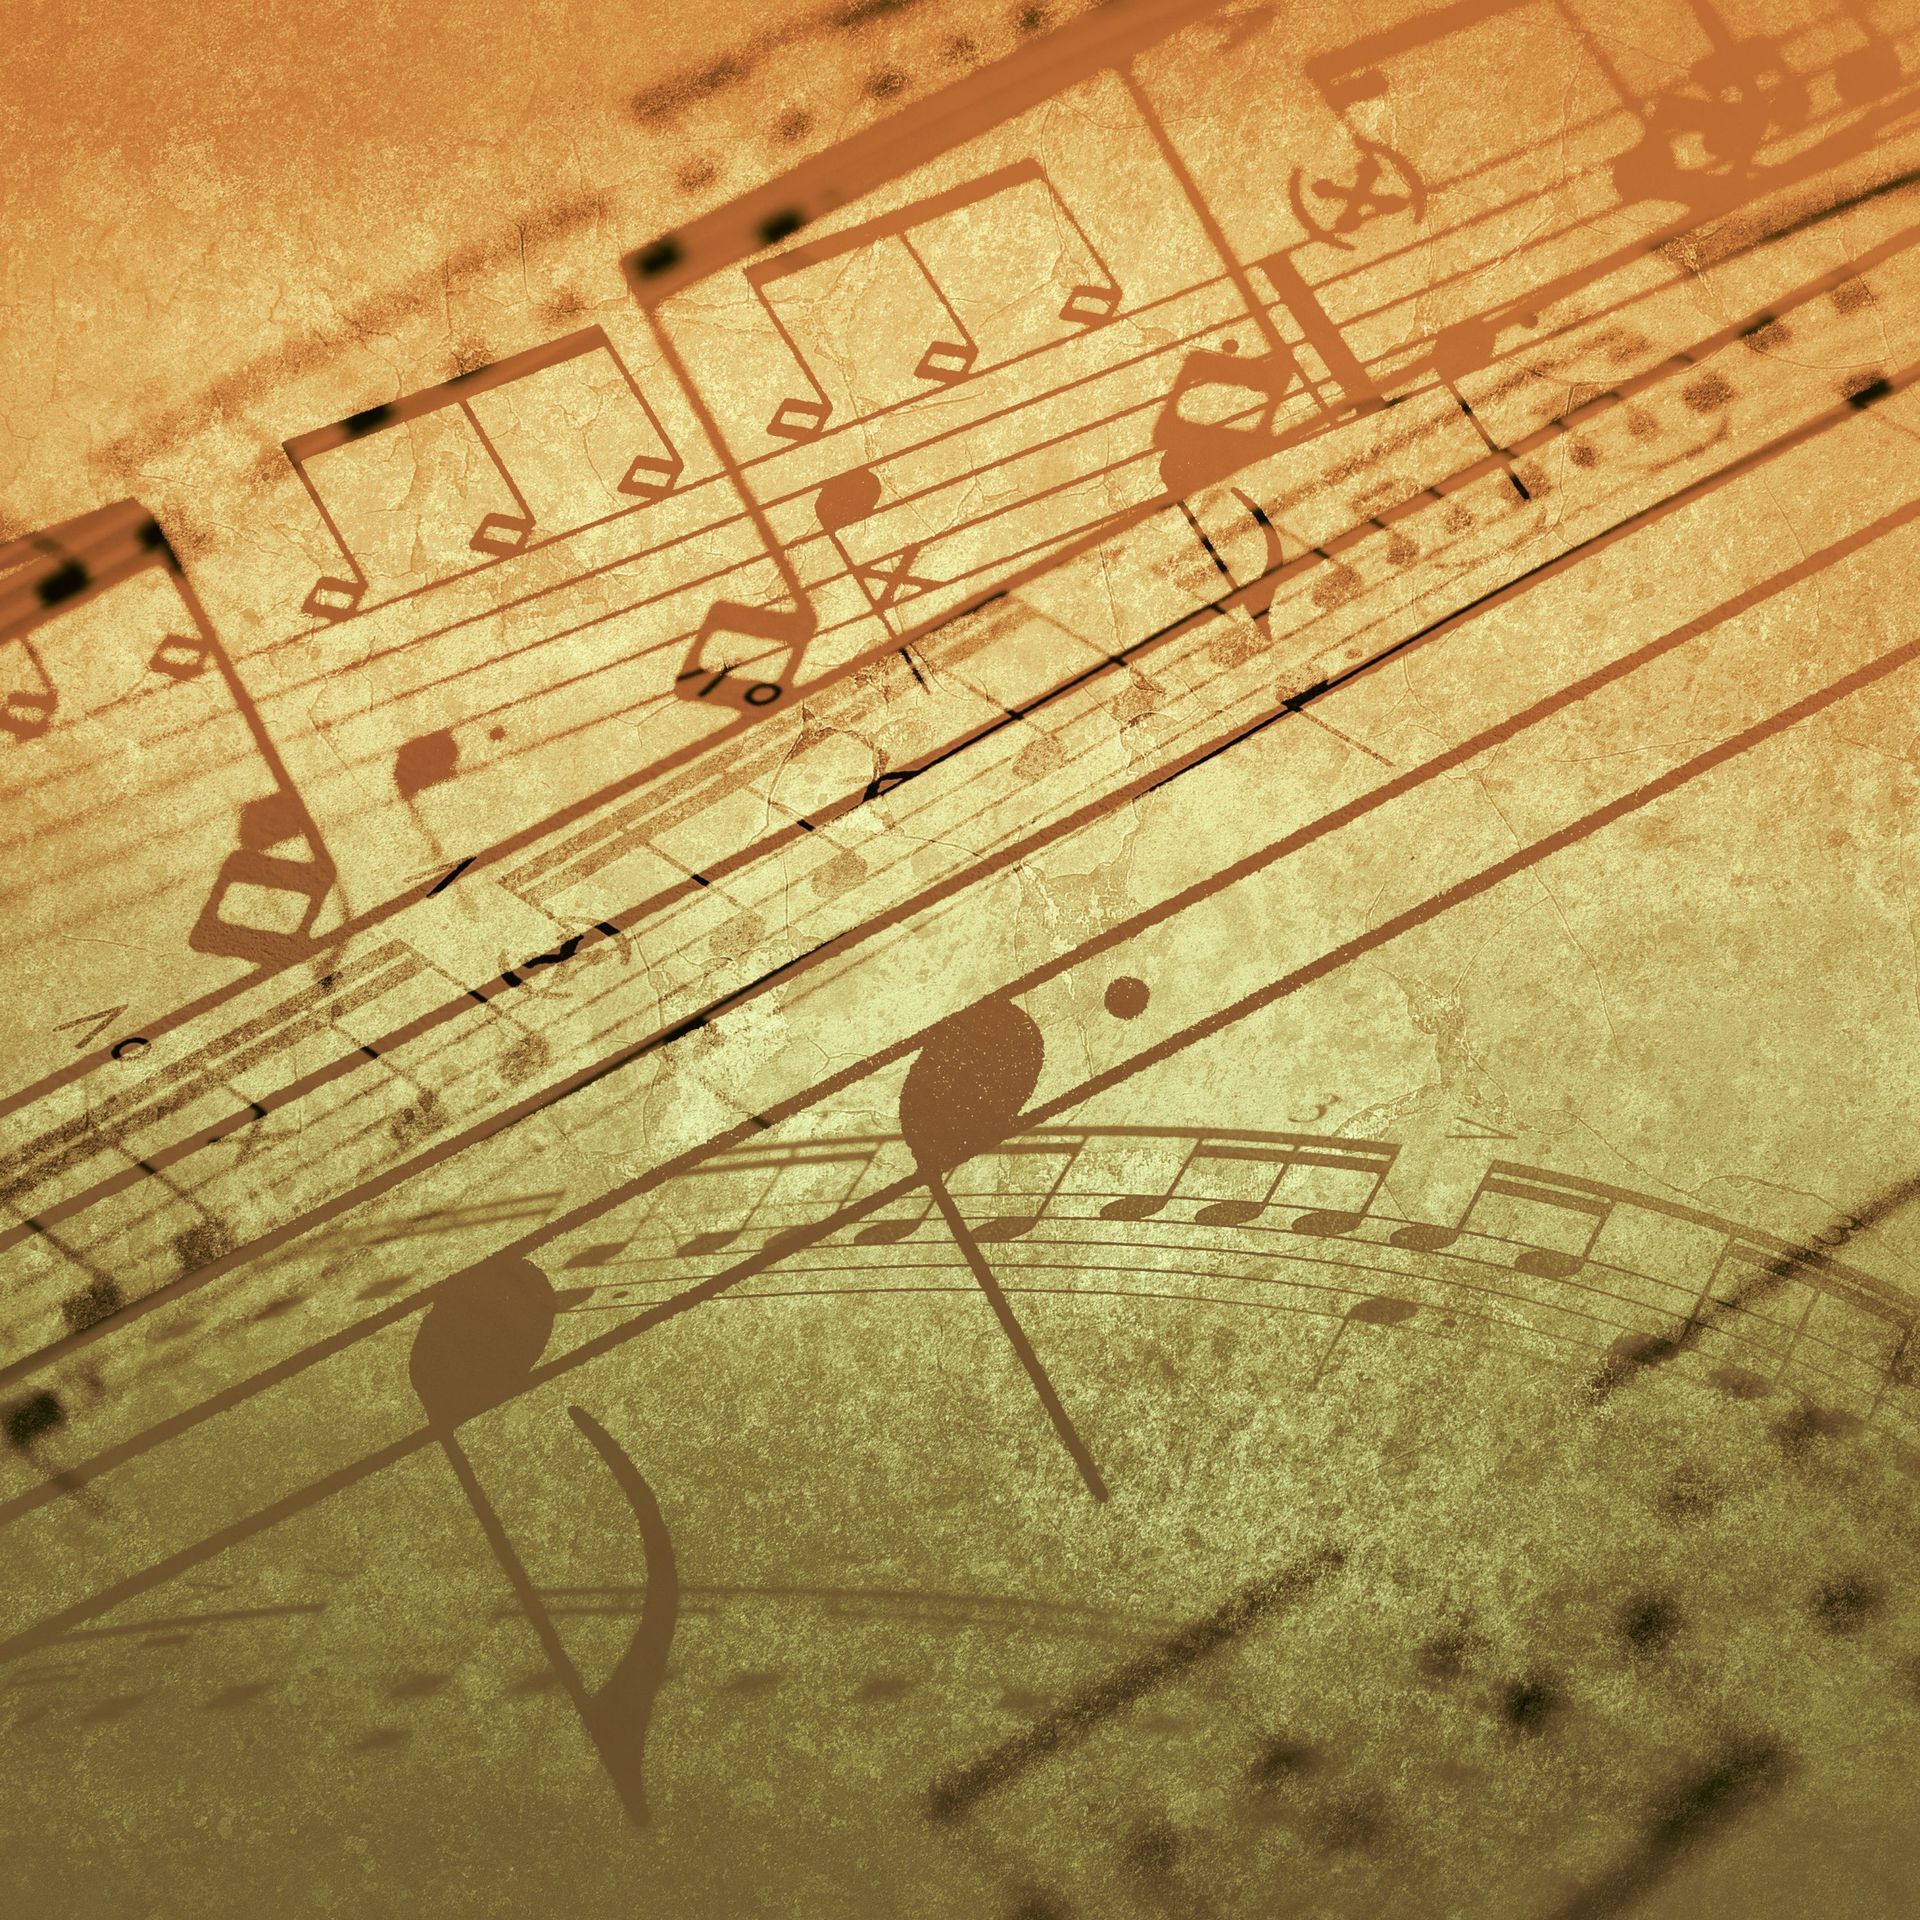 La production et la musique classique : oui, cela peut plaire aux jeunes -  Artistikrezo